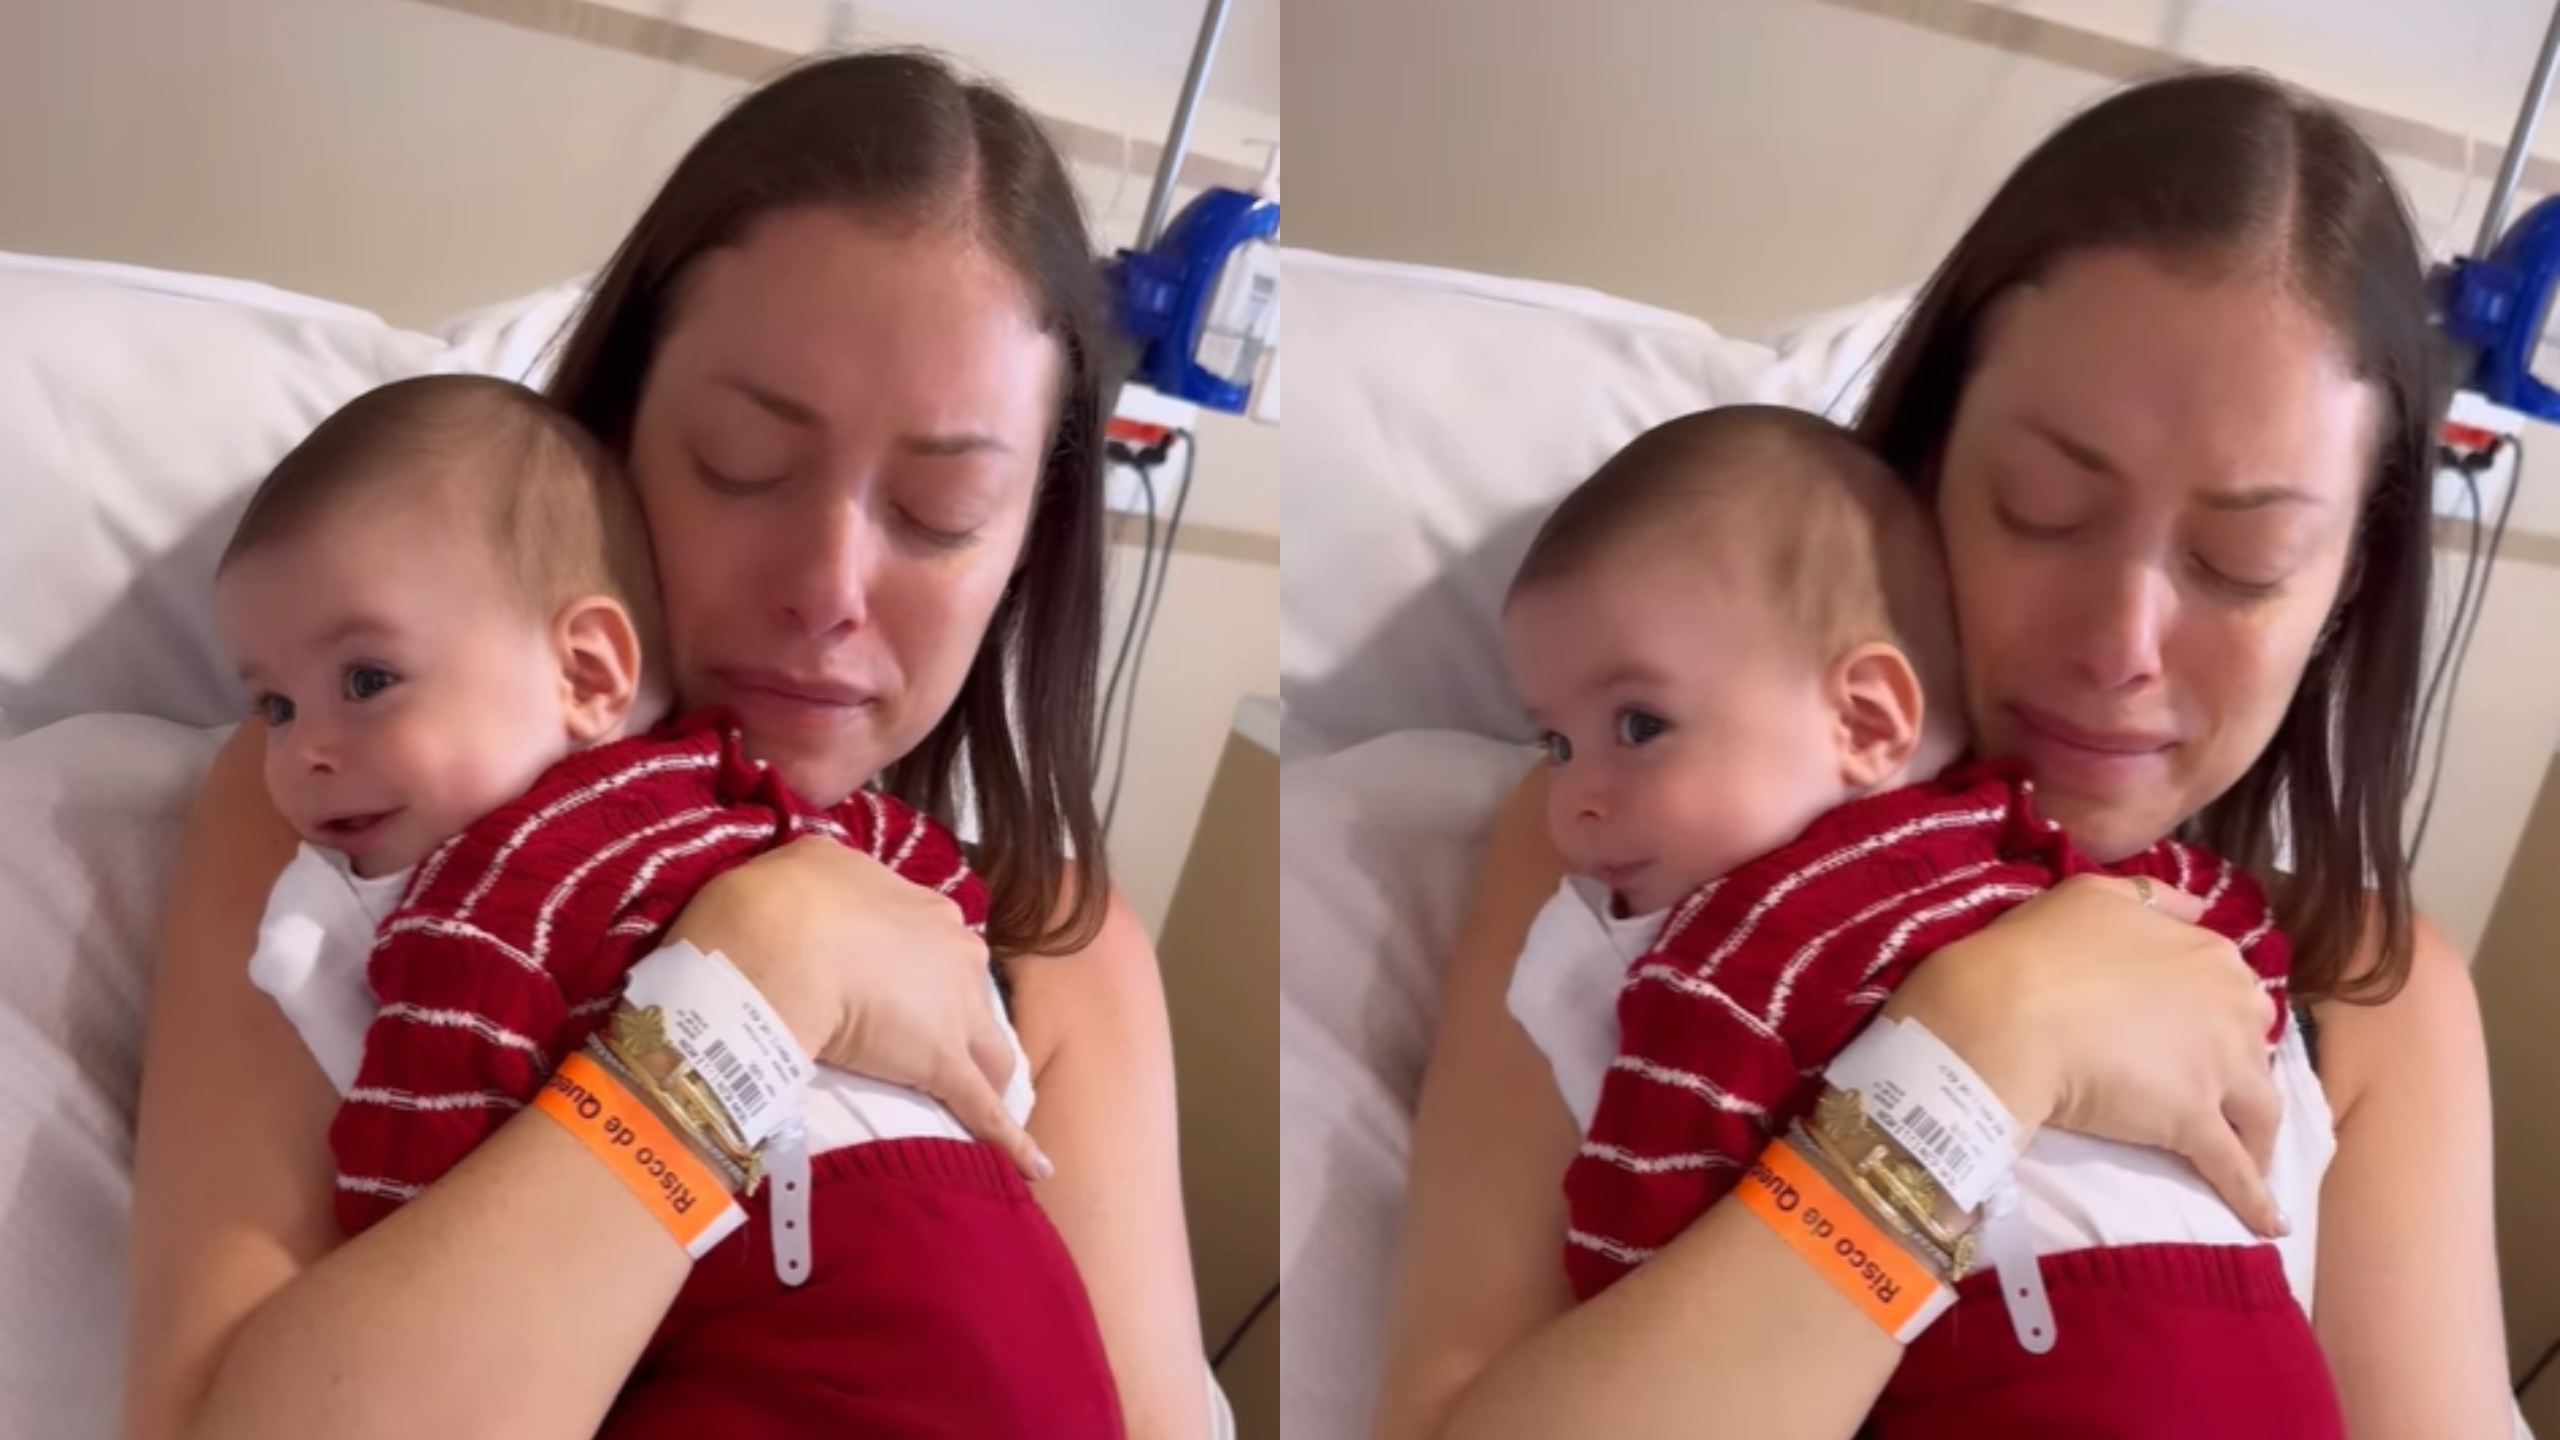 Internada, ela já iniciou a quimioterapia e não pode mais amamentar o filho de 5 meses